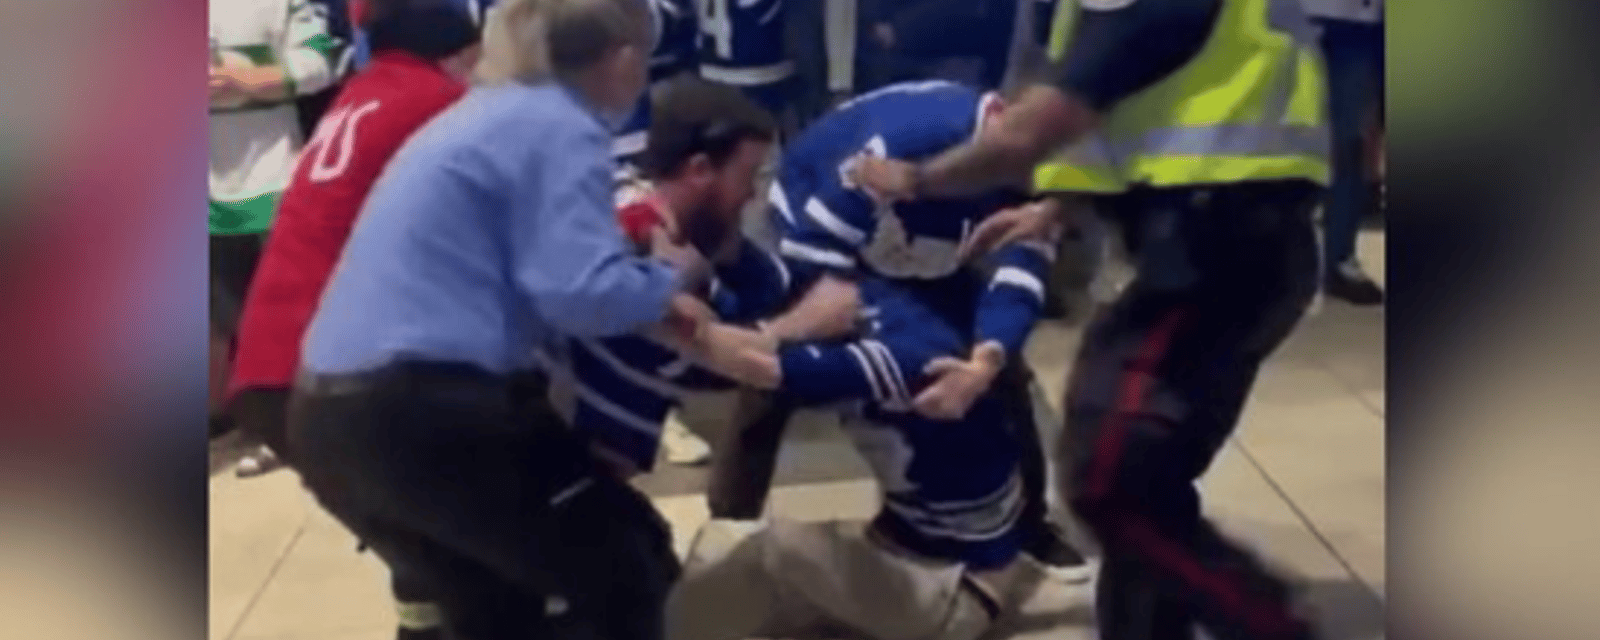 VIDÉO | Une bagarre entre plusieurs fans des Leafs éclate au Scotiabank Arena